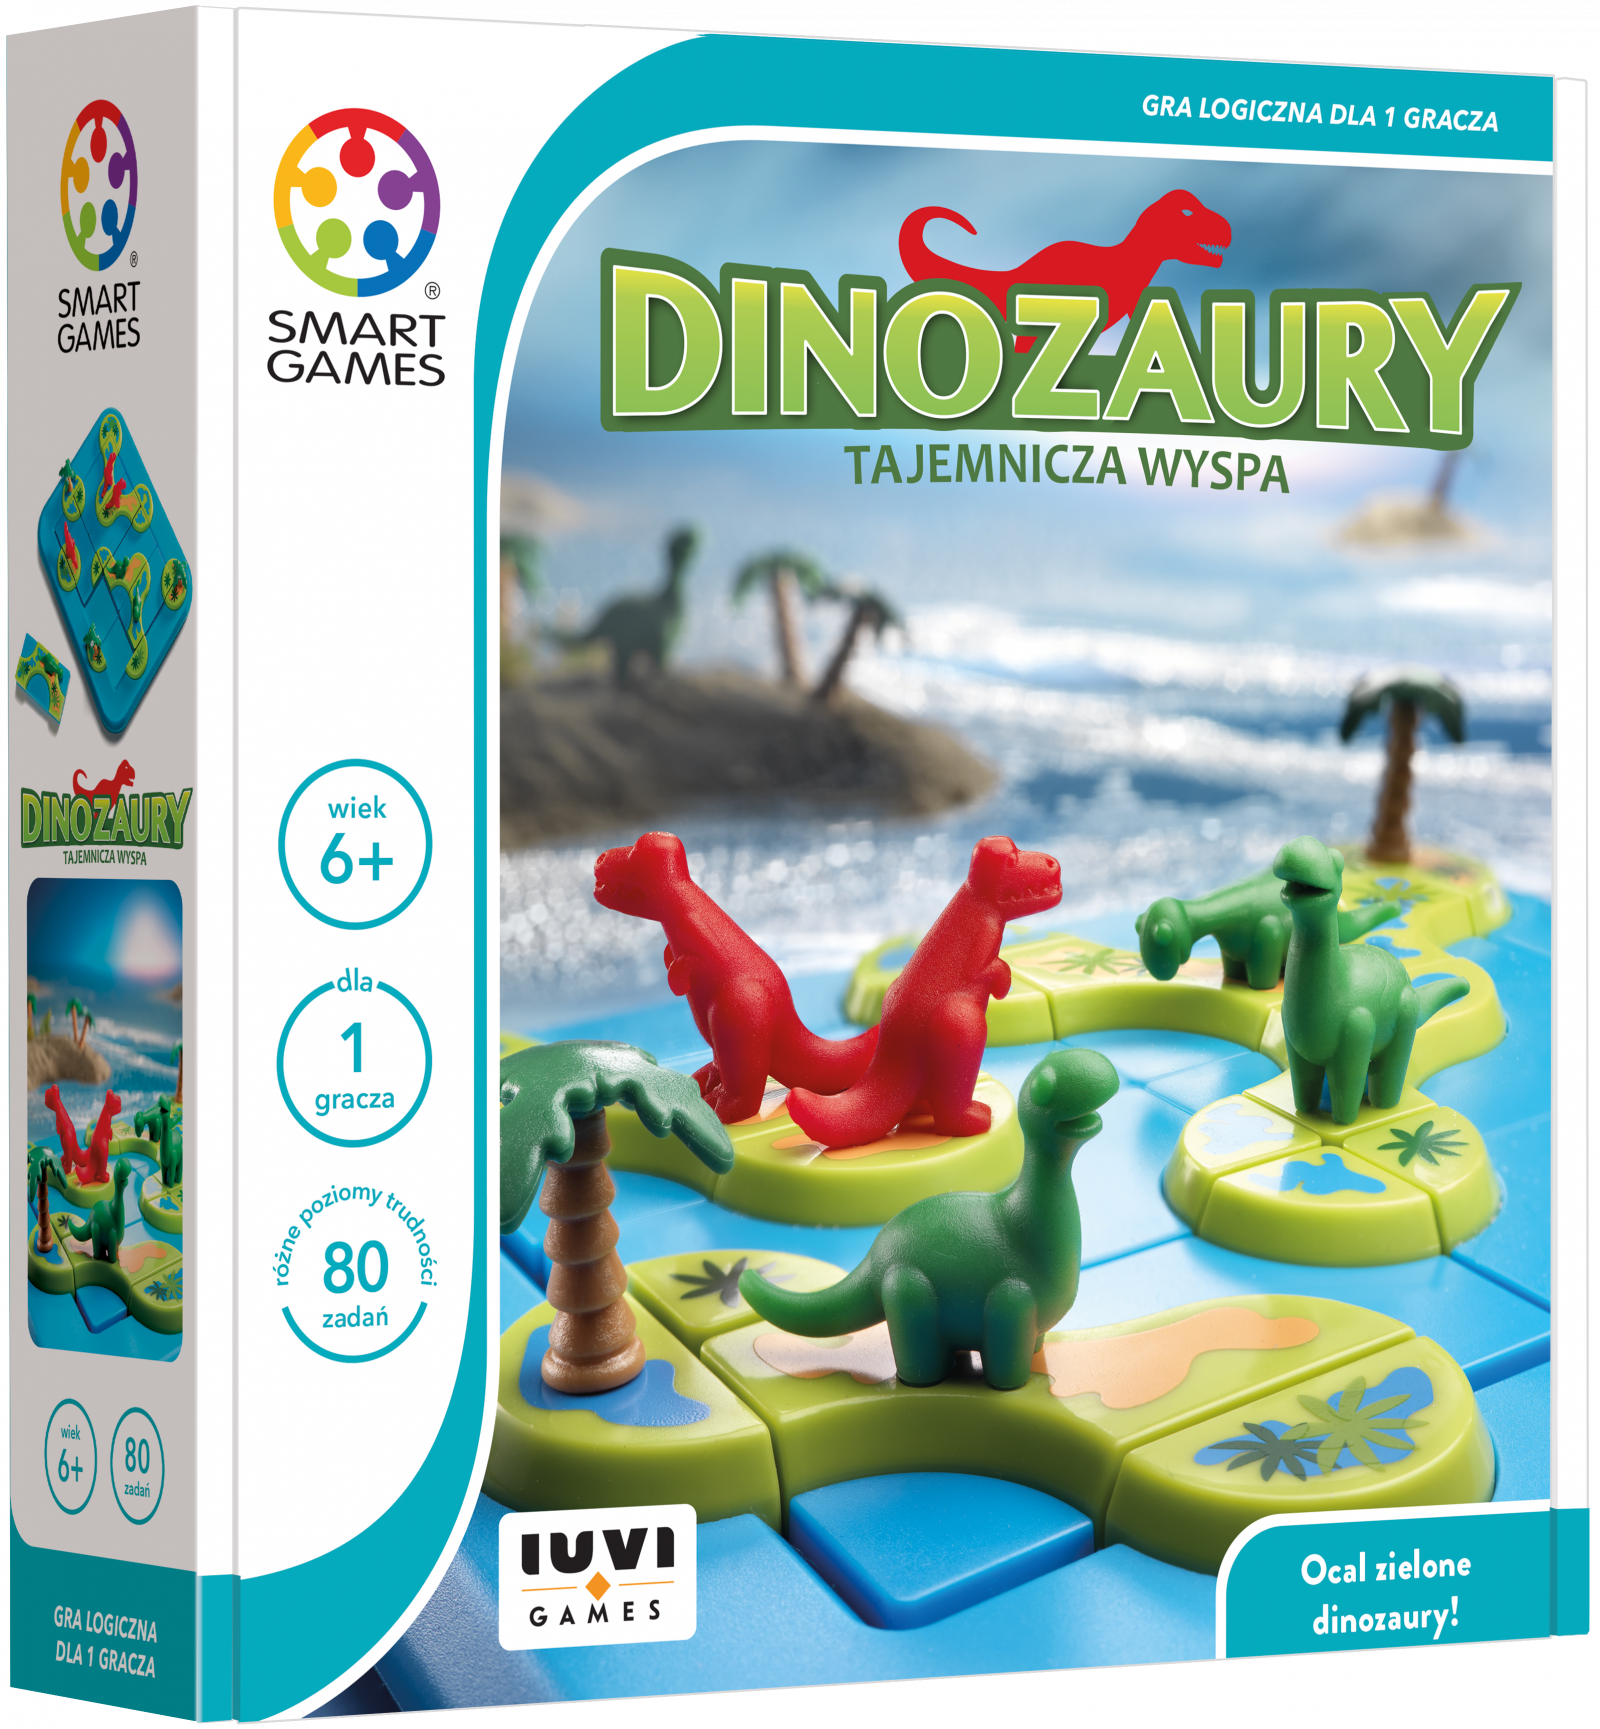 Smart Games - Dinozaury Tajemnicza Wyspa